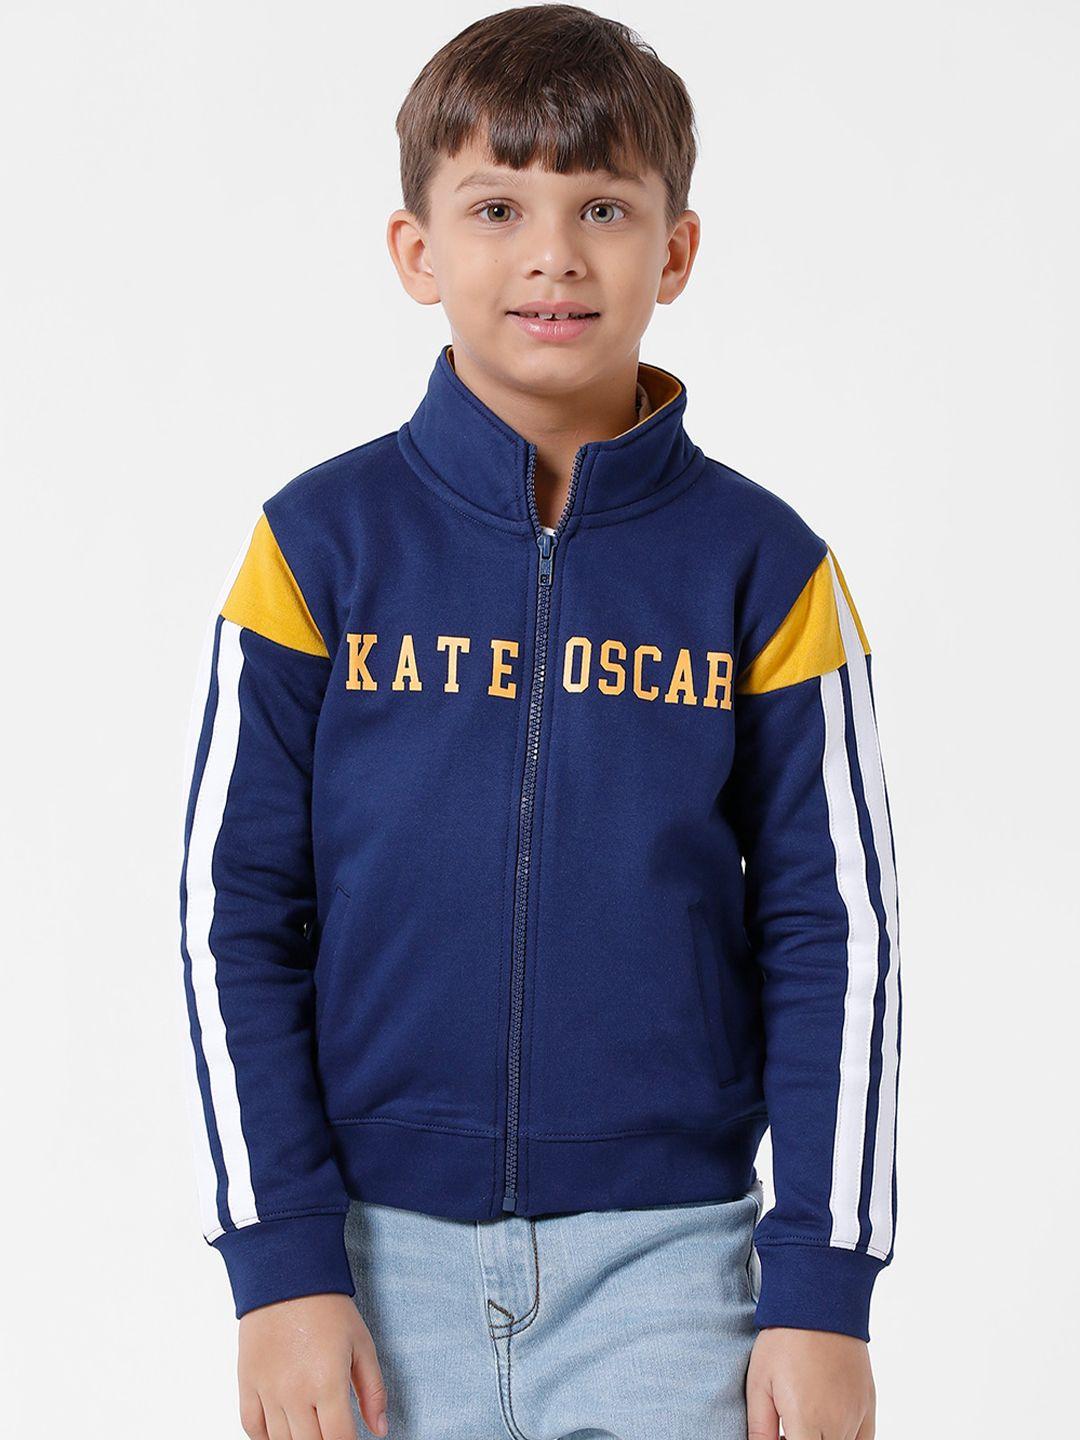 kate & oscar boys printed fleece sweatshirt